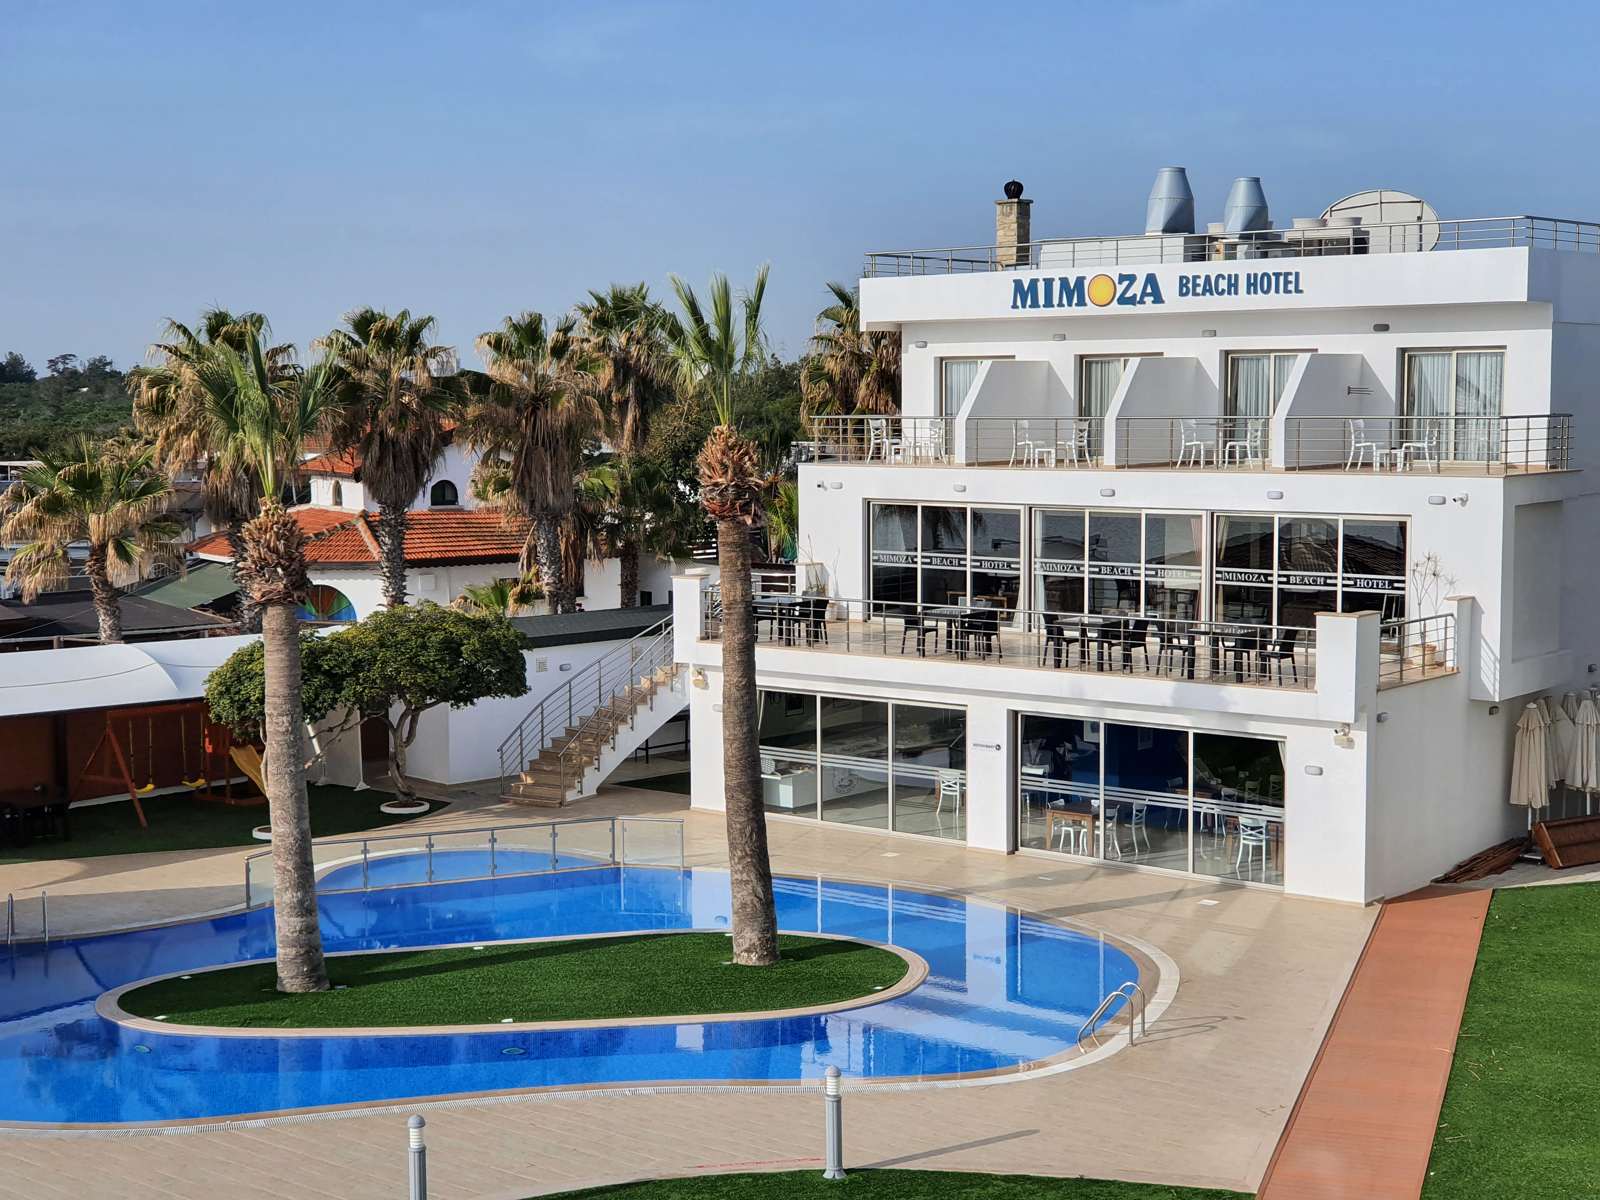 Mimoza Beach Hotel mit den zwei charakteristischen Palmen auf der Poolinsel - Lupe Reisen